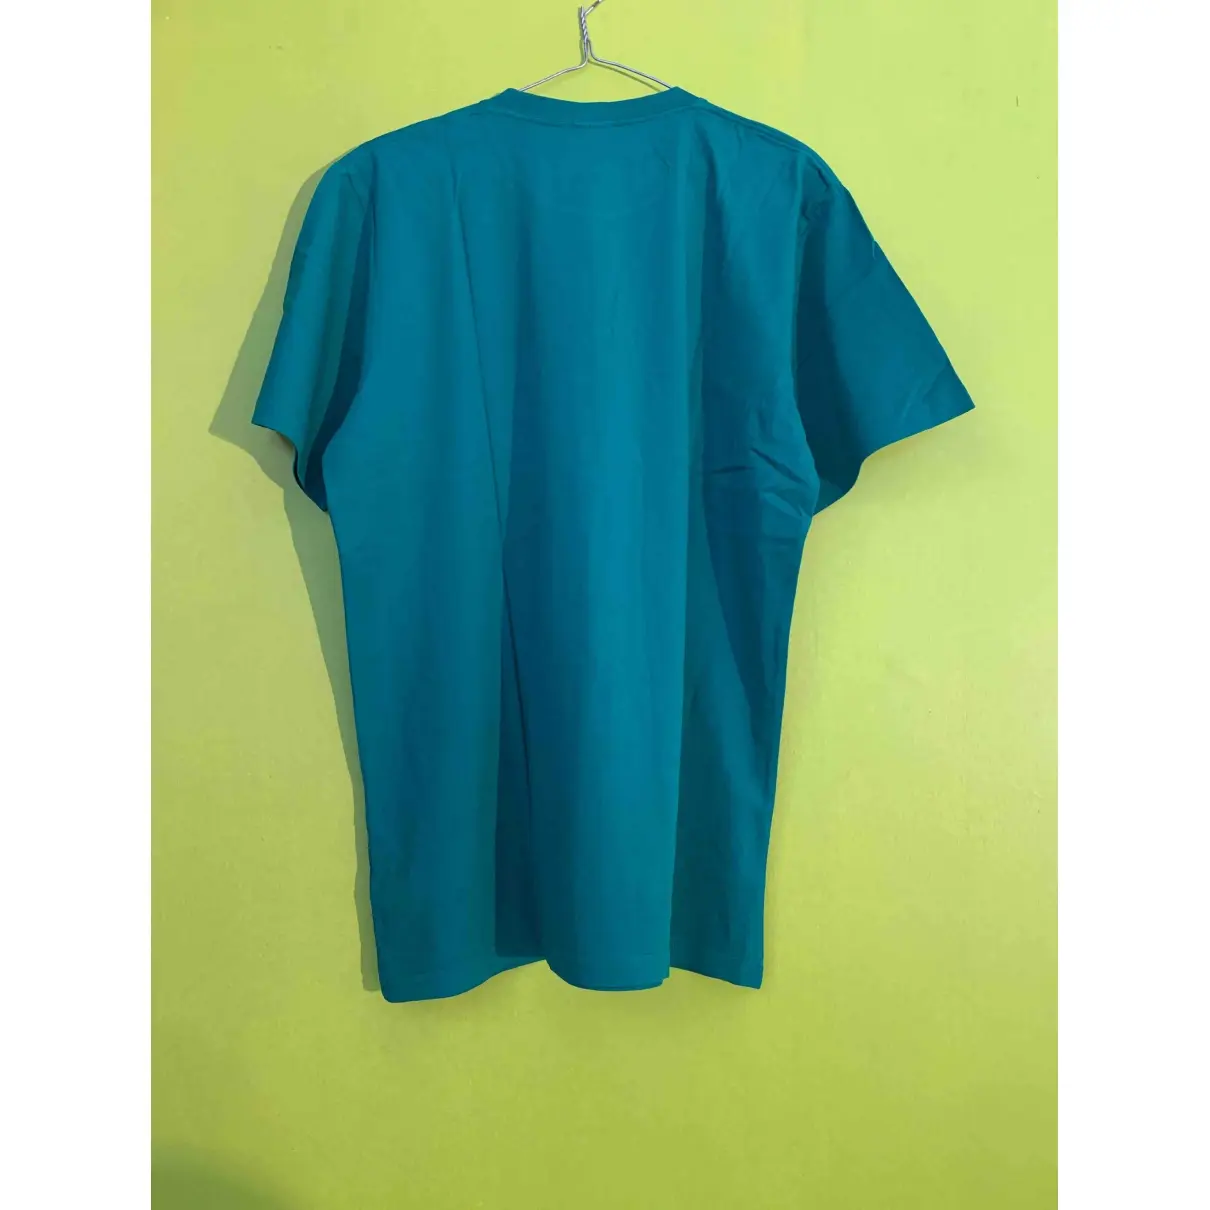 Carhartt Green Cotton T-shirt for sale